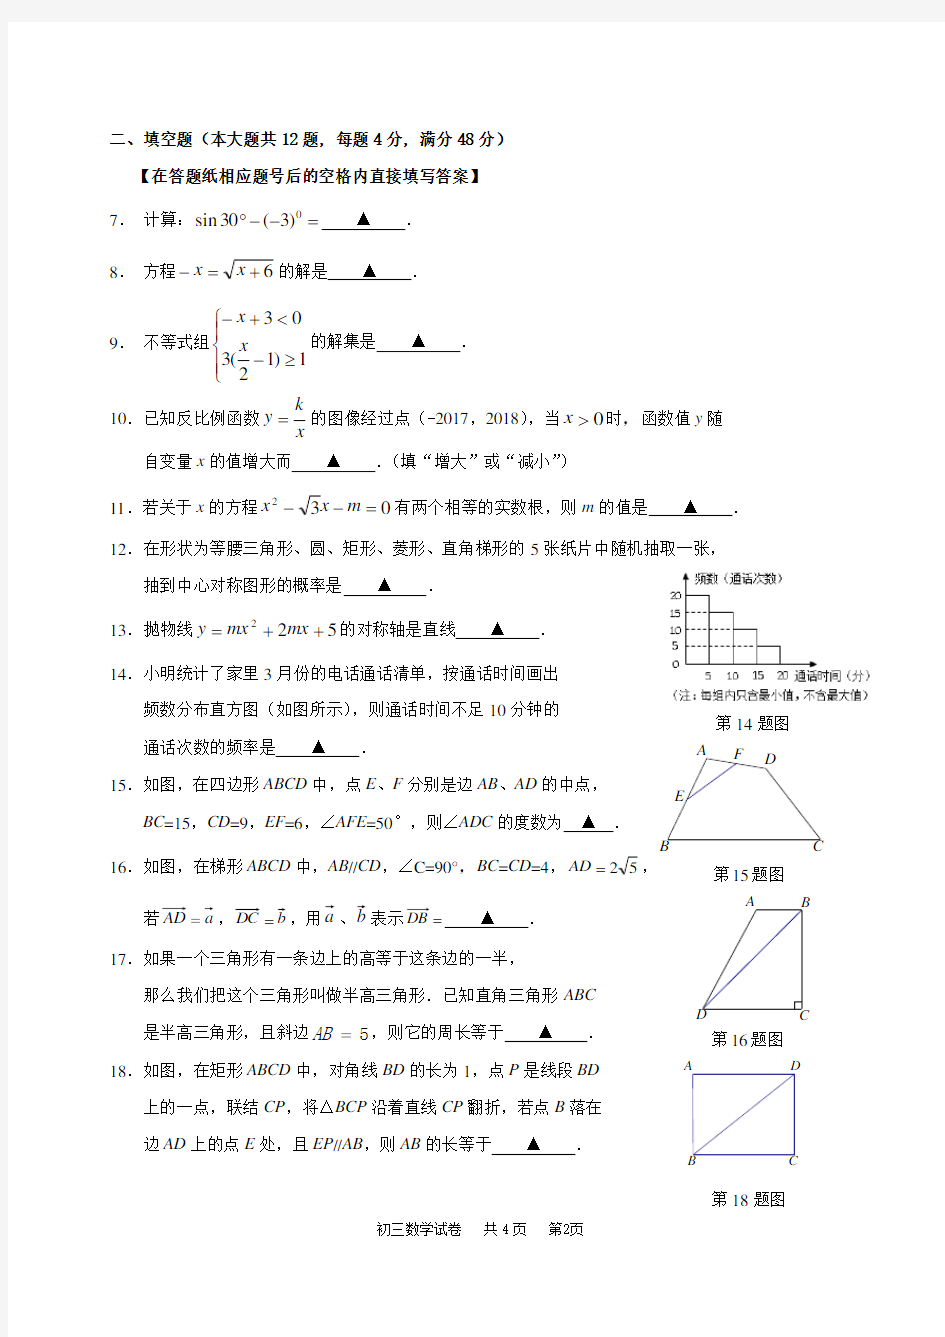 2018上海初三数学二模-长宁区2017学年第二学期九年级数学试卷及评分标准